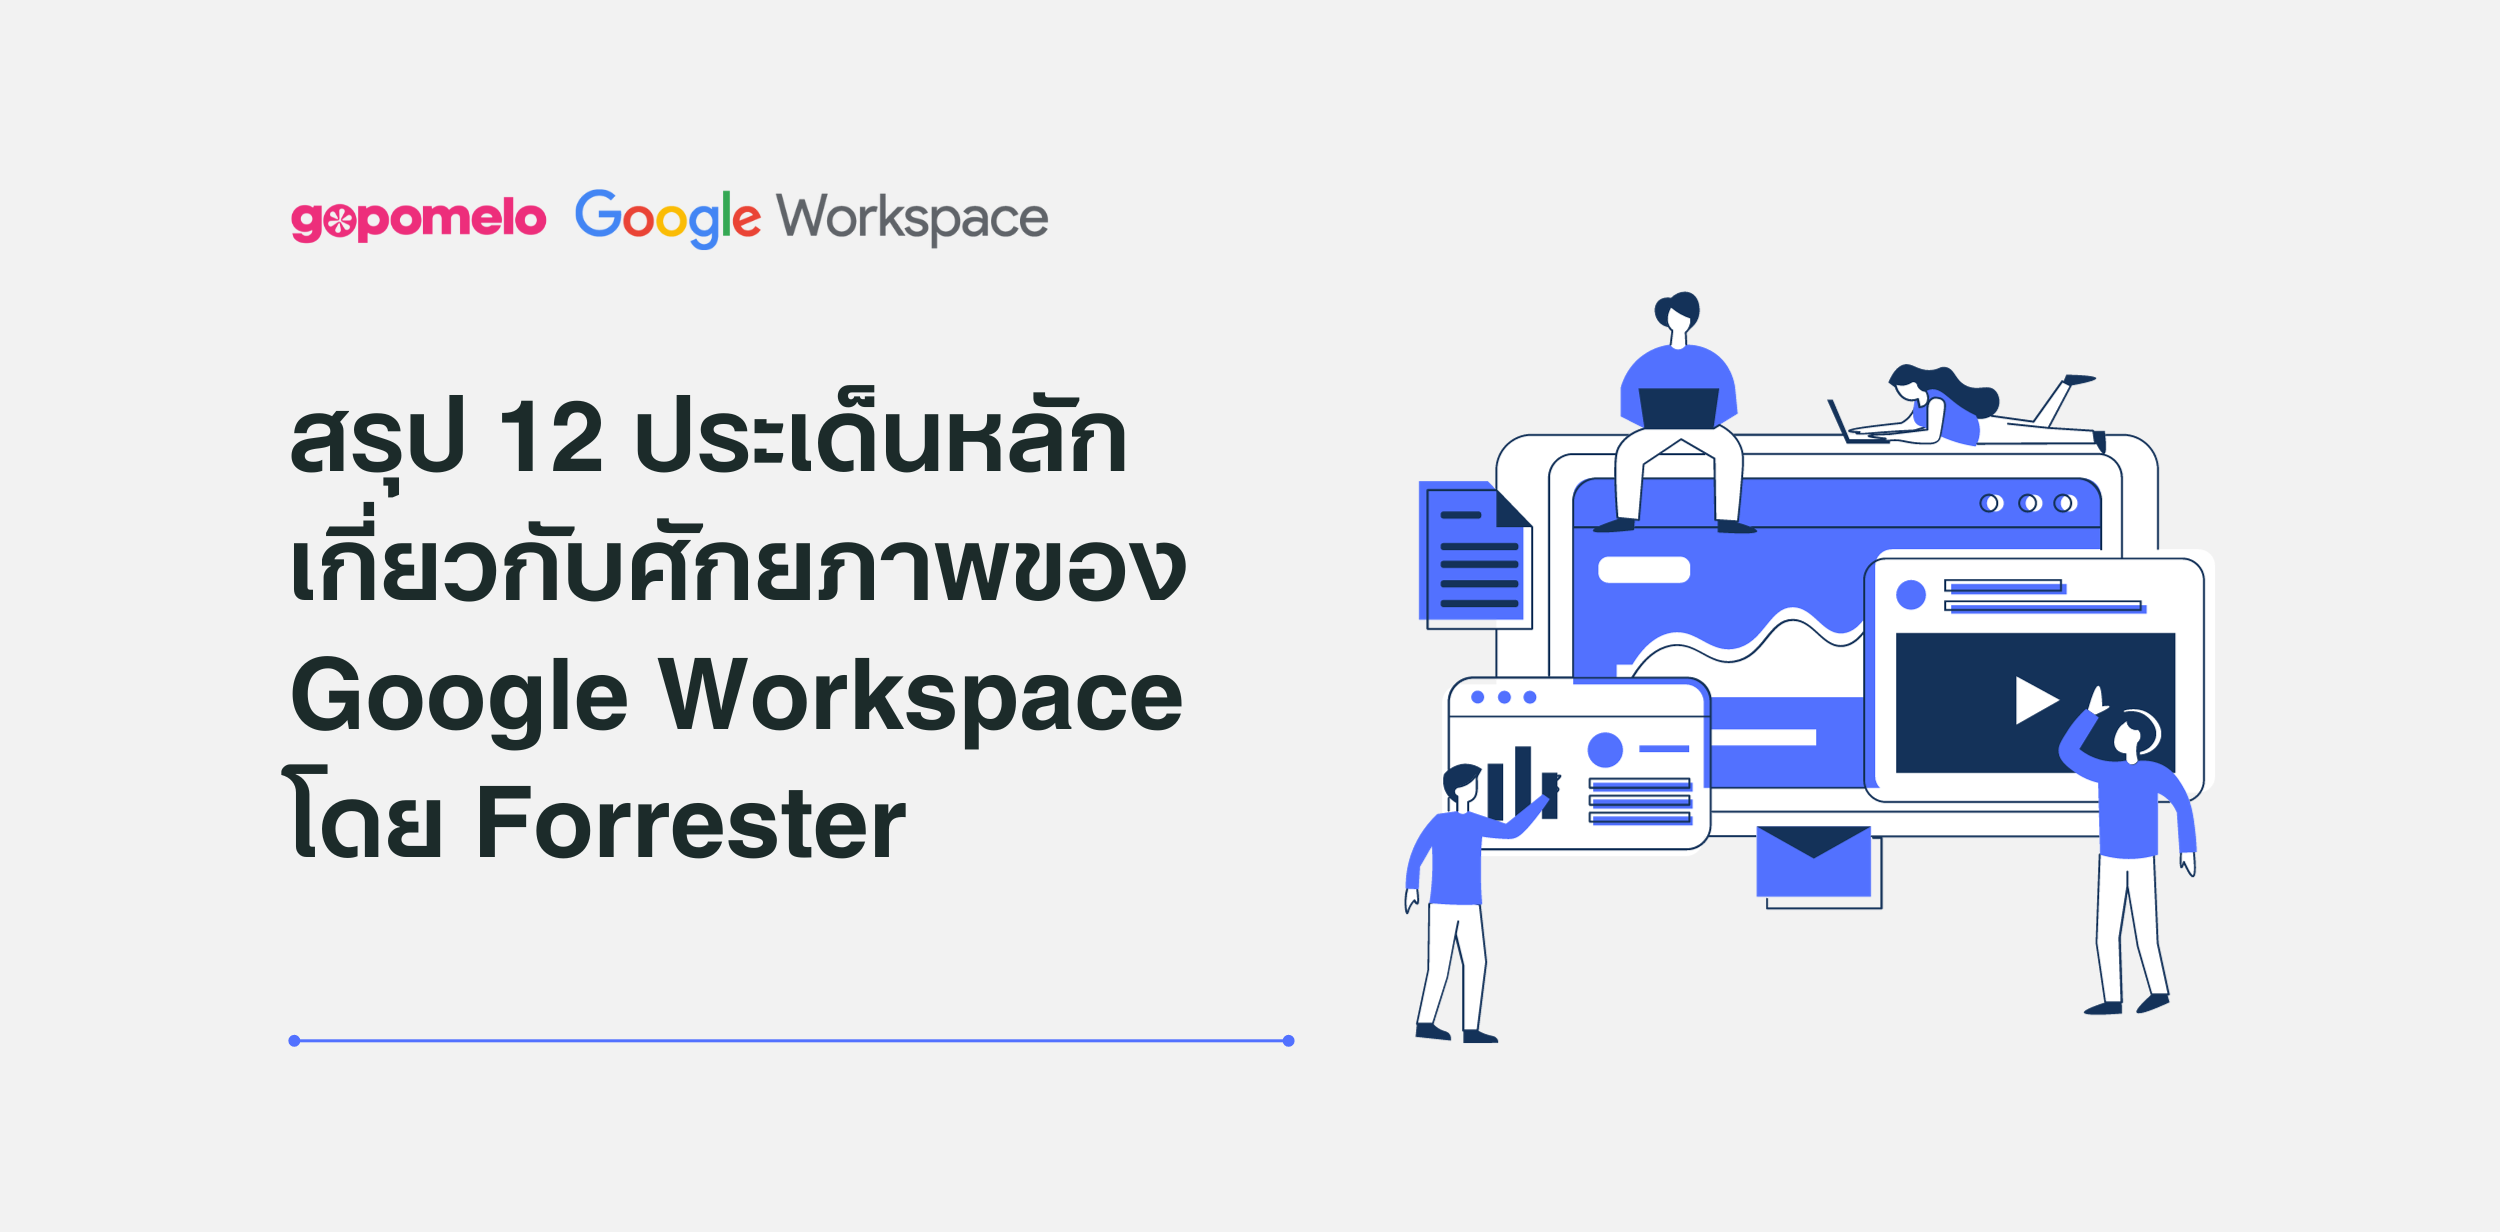 สรุป 12 ประเด็นหลักเกียวกับศักยภาพของ Google Workspace ในด้าน ROI สำหรับองค์กร ด้านความปลอดภัย และประสิทธิภาพการทำงานที่เหนือกว่า โดย Forrester